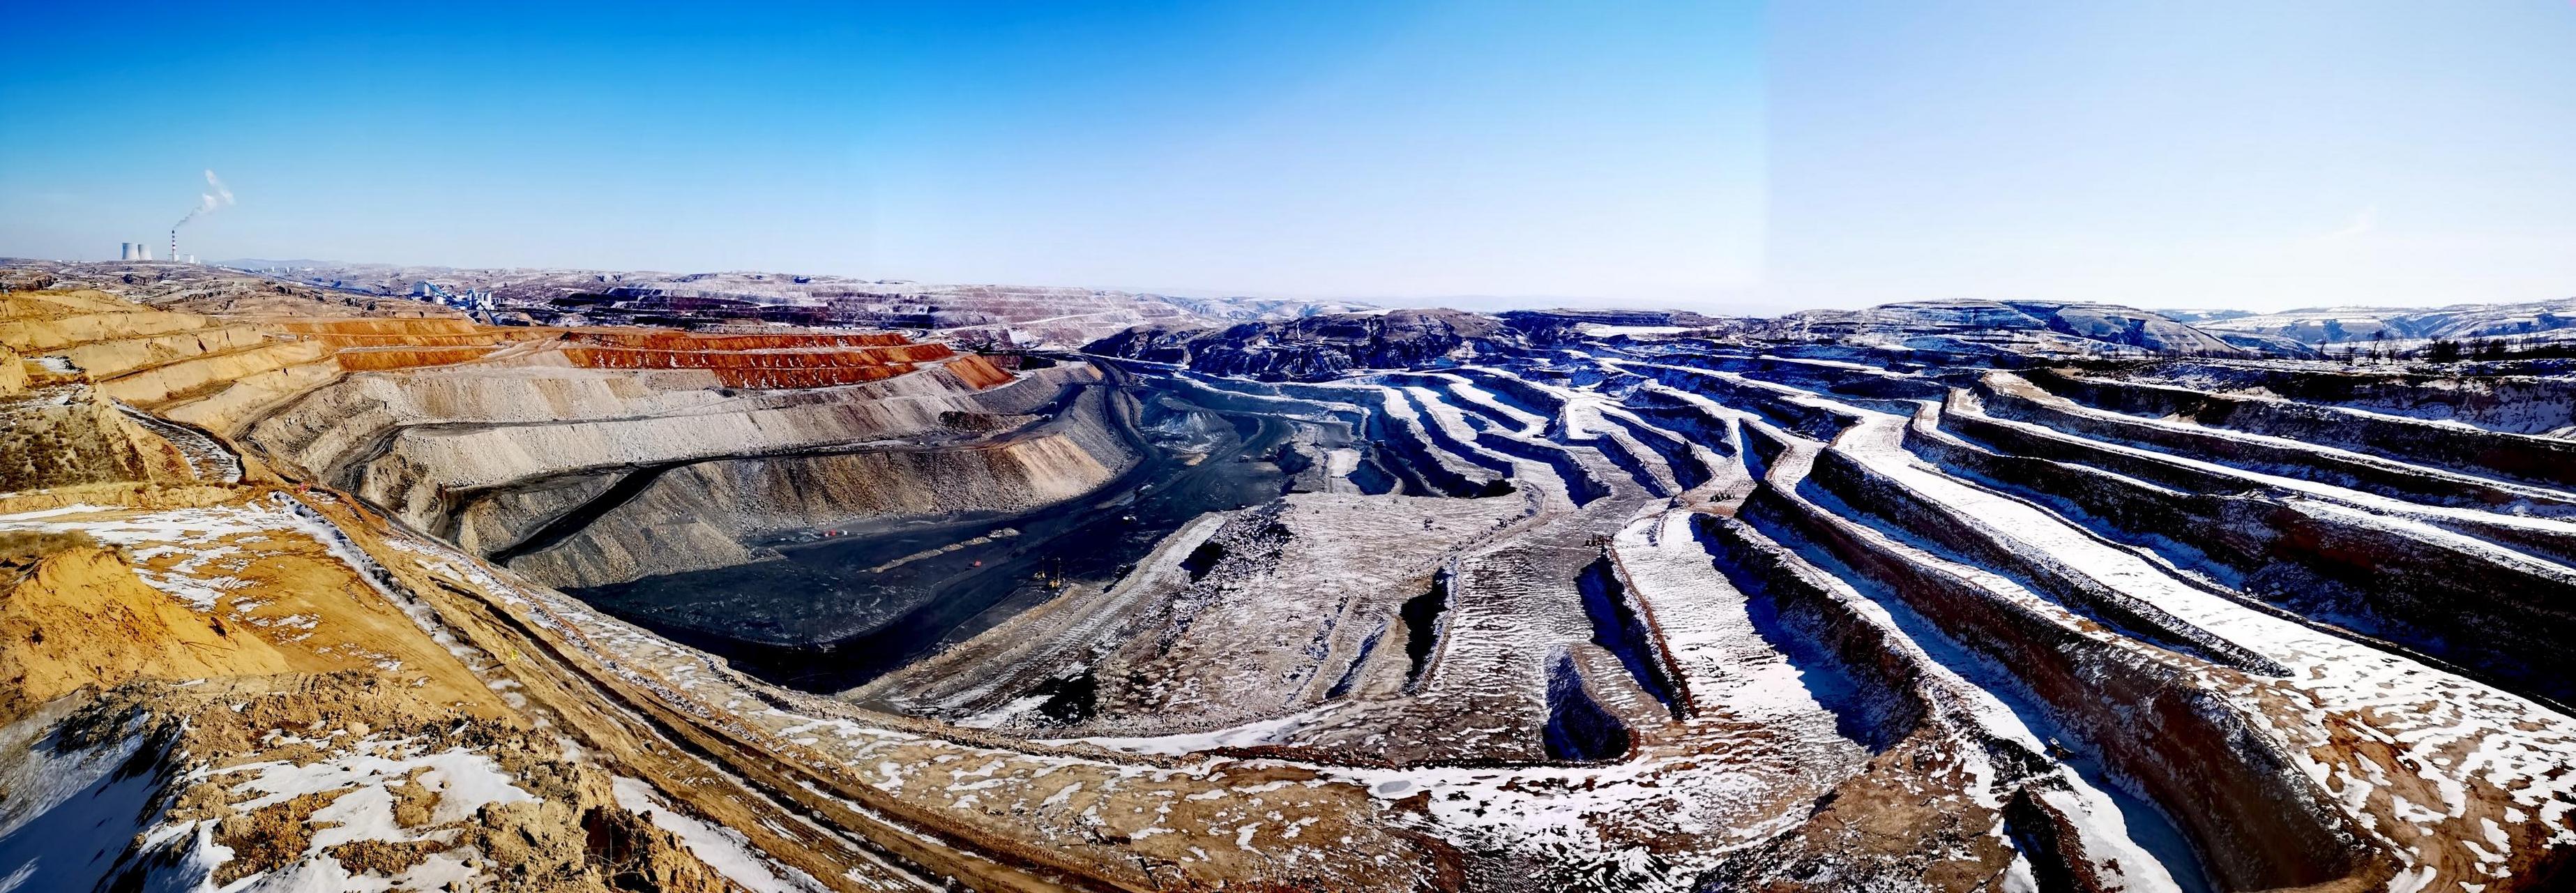 雪后的露天煤矿全景图拍了很多煤矿的风景照,这是最好的一副